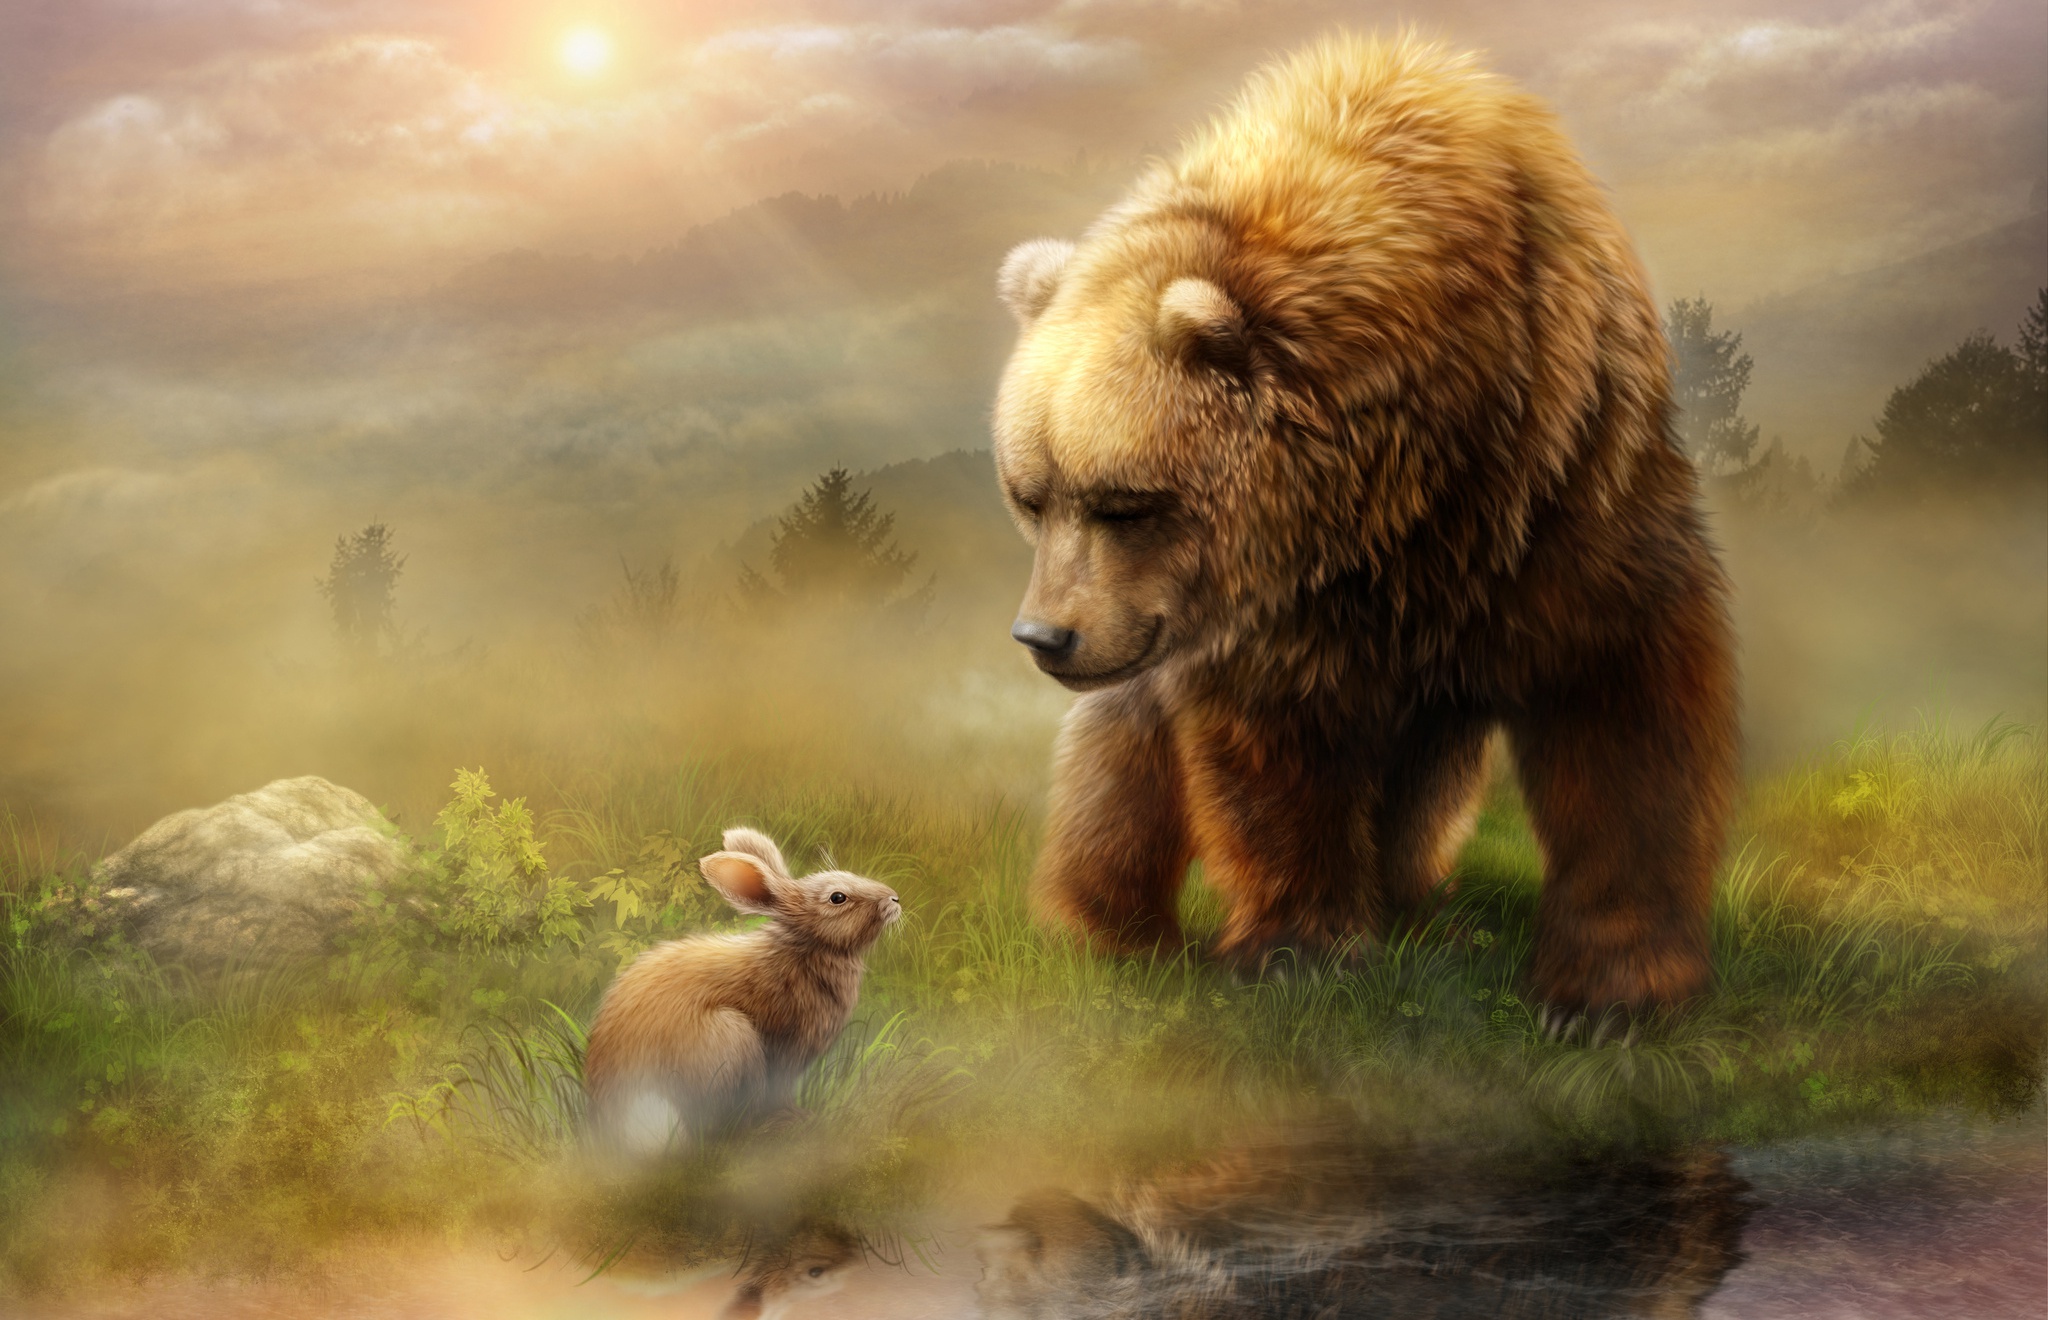 Скачать обои бесплатно Животные, Медведи, Медведь, Кролик картинка на рабочий стол ПК